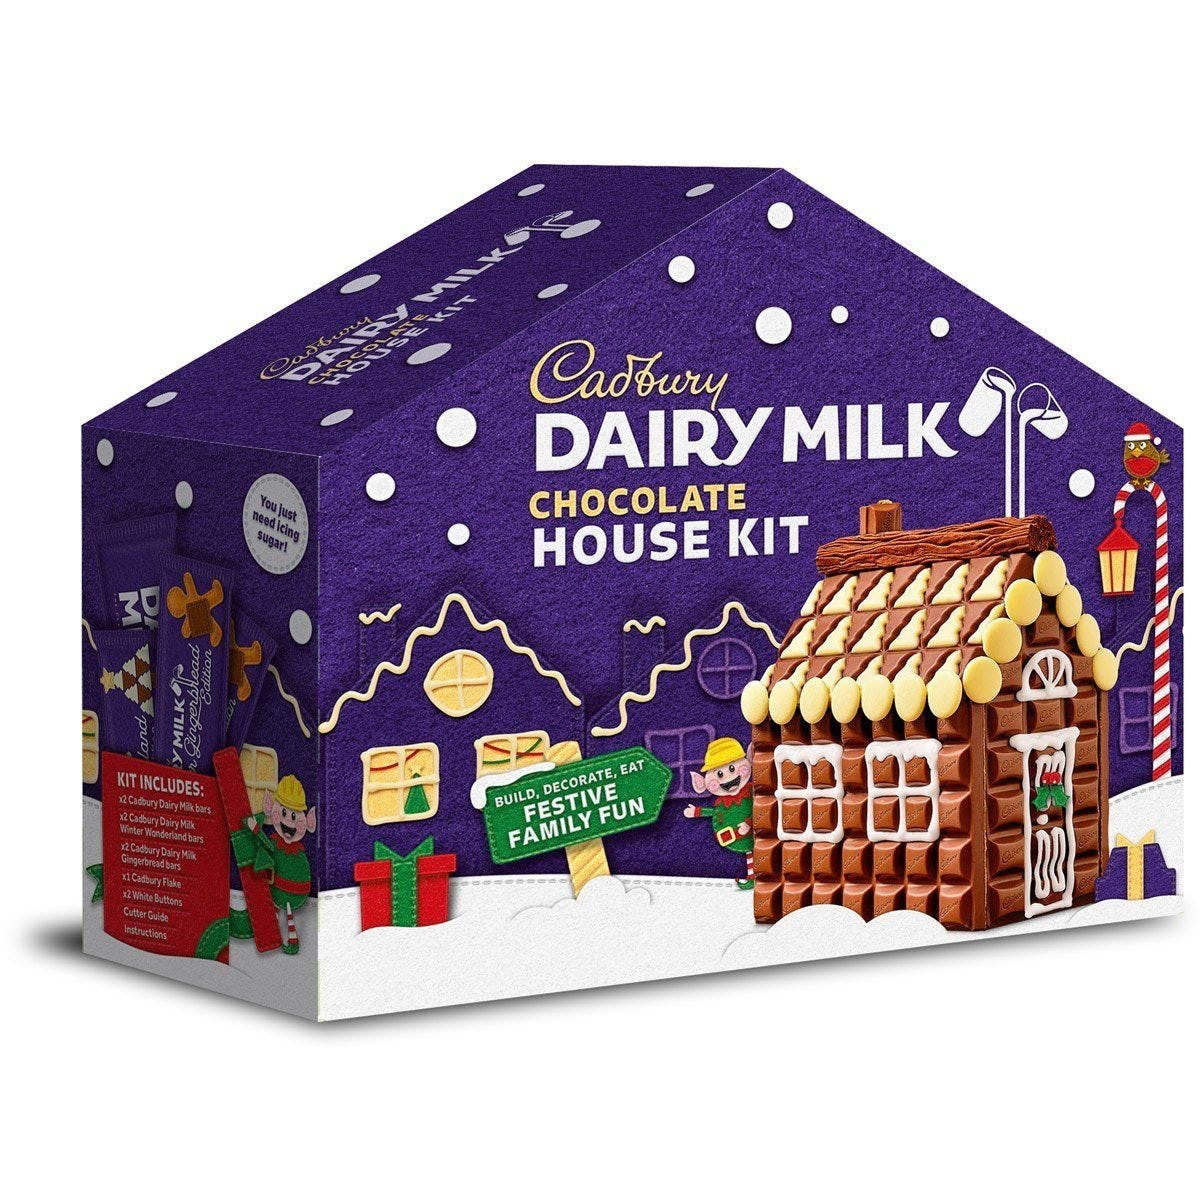 Теперь вы можете купить набор «Шоколадный домик своими руками» в Cadbury